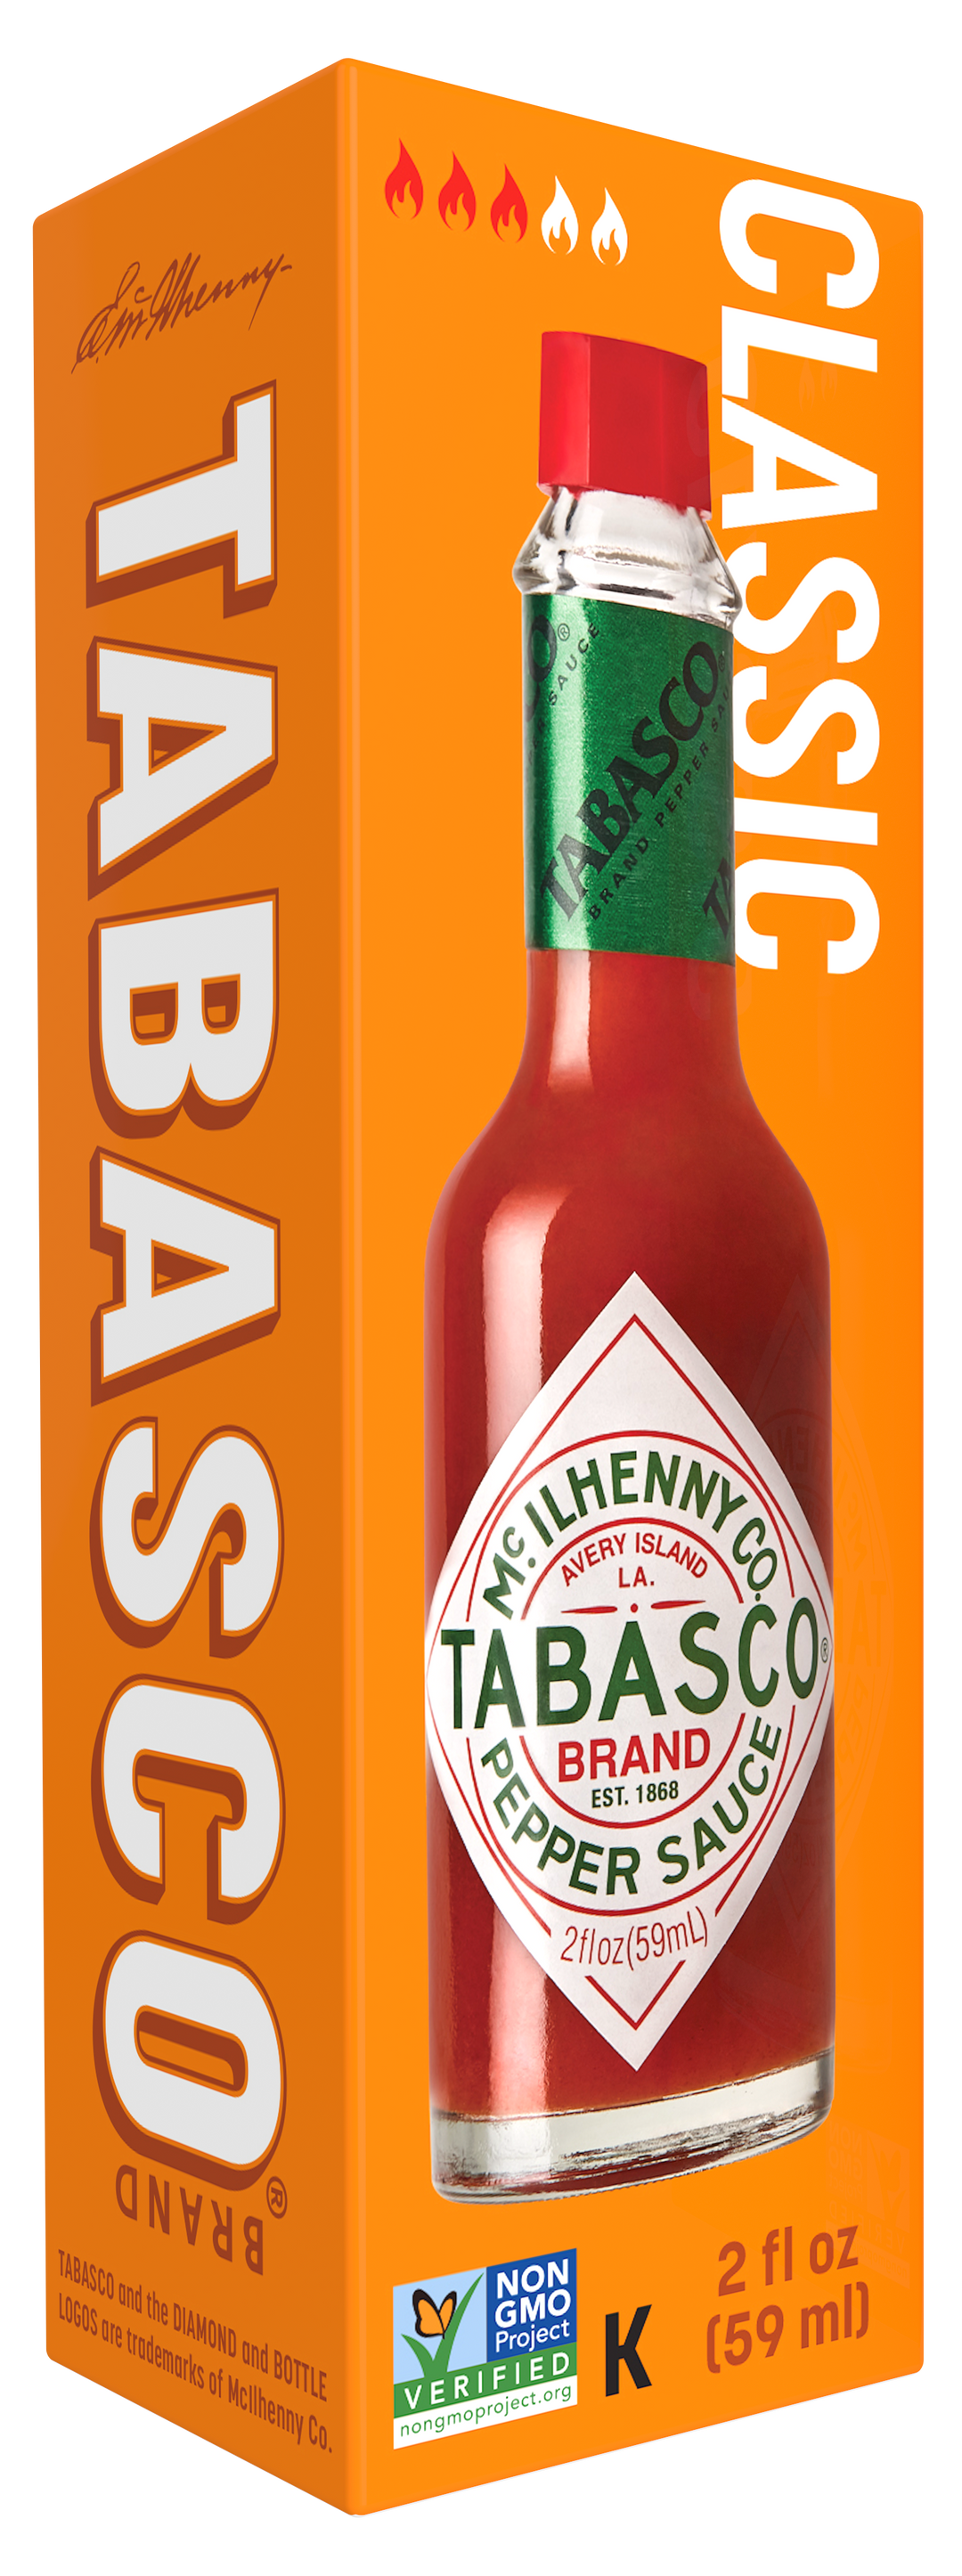 Tabasco Pepper Sauce Hot Sauce Bottle-2 fl oz.-24/Case